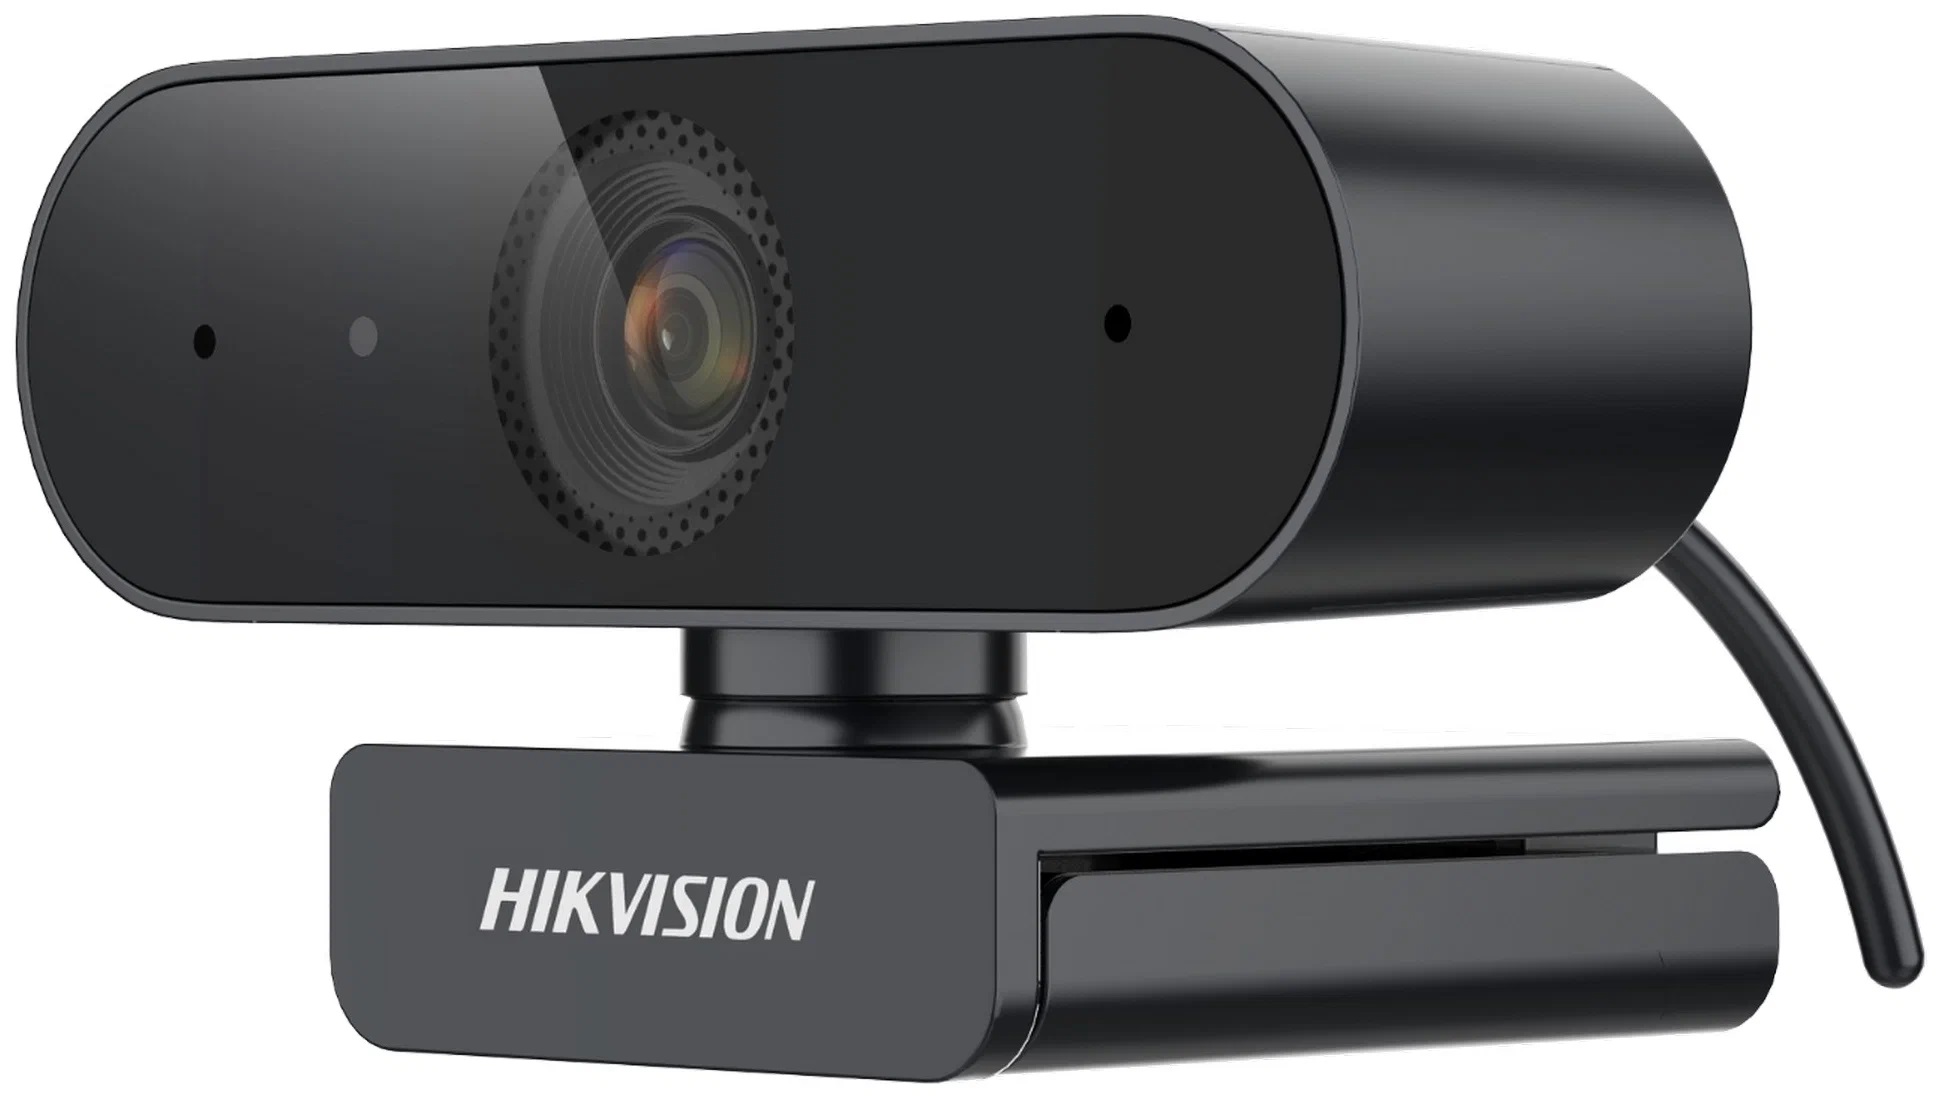 Веб-камера Hikvision DS-U02, 2 млн пикс, 1920x1080, USB 2.0, встроенный микрофон, крепление на мониторе